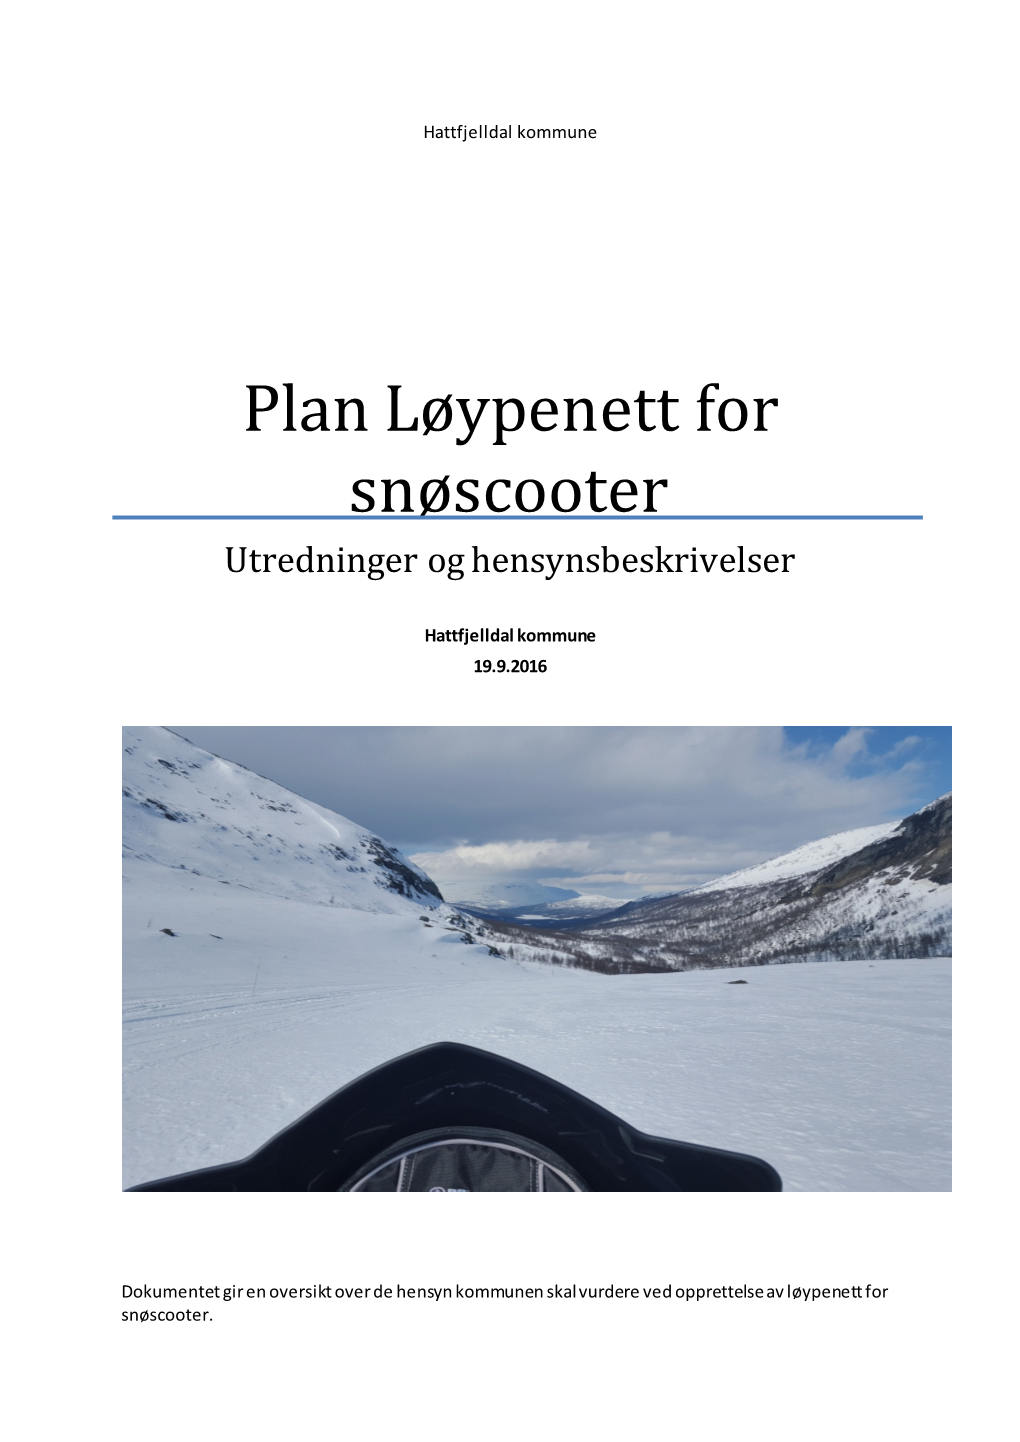 Plan Løypenett for Snøscooter Utredninger Og Hensynsbeskrivelser